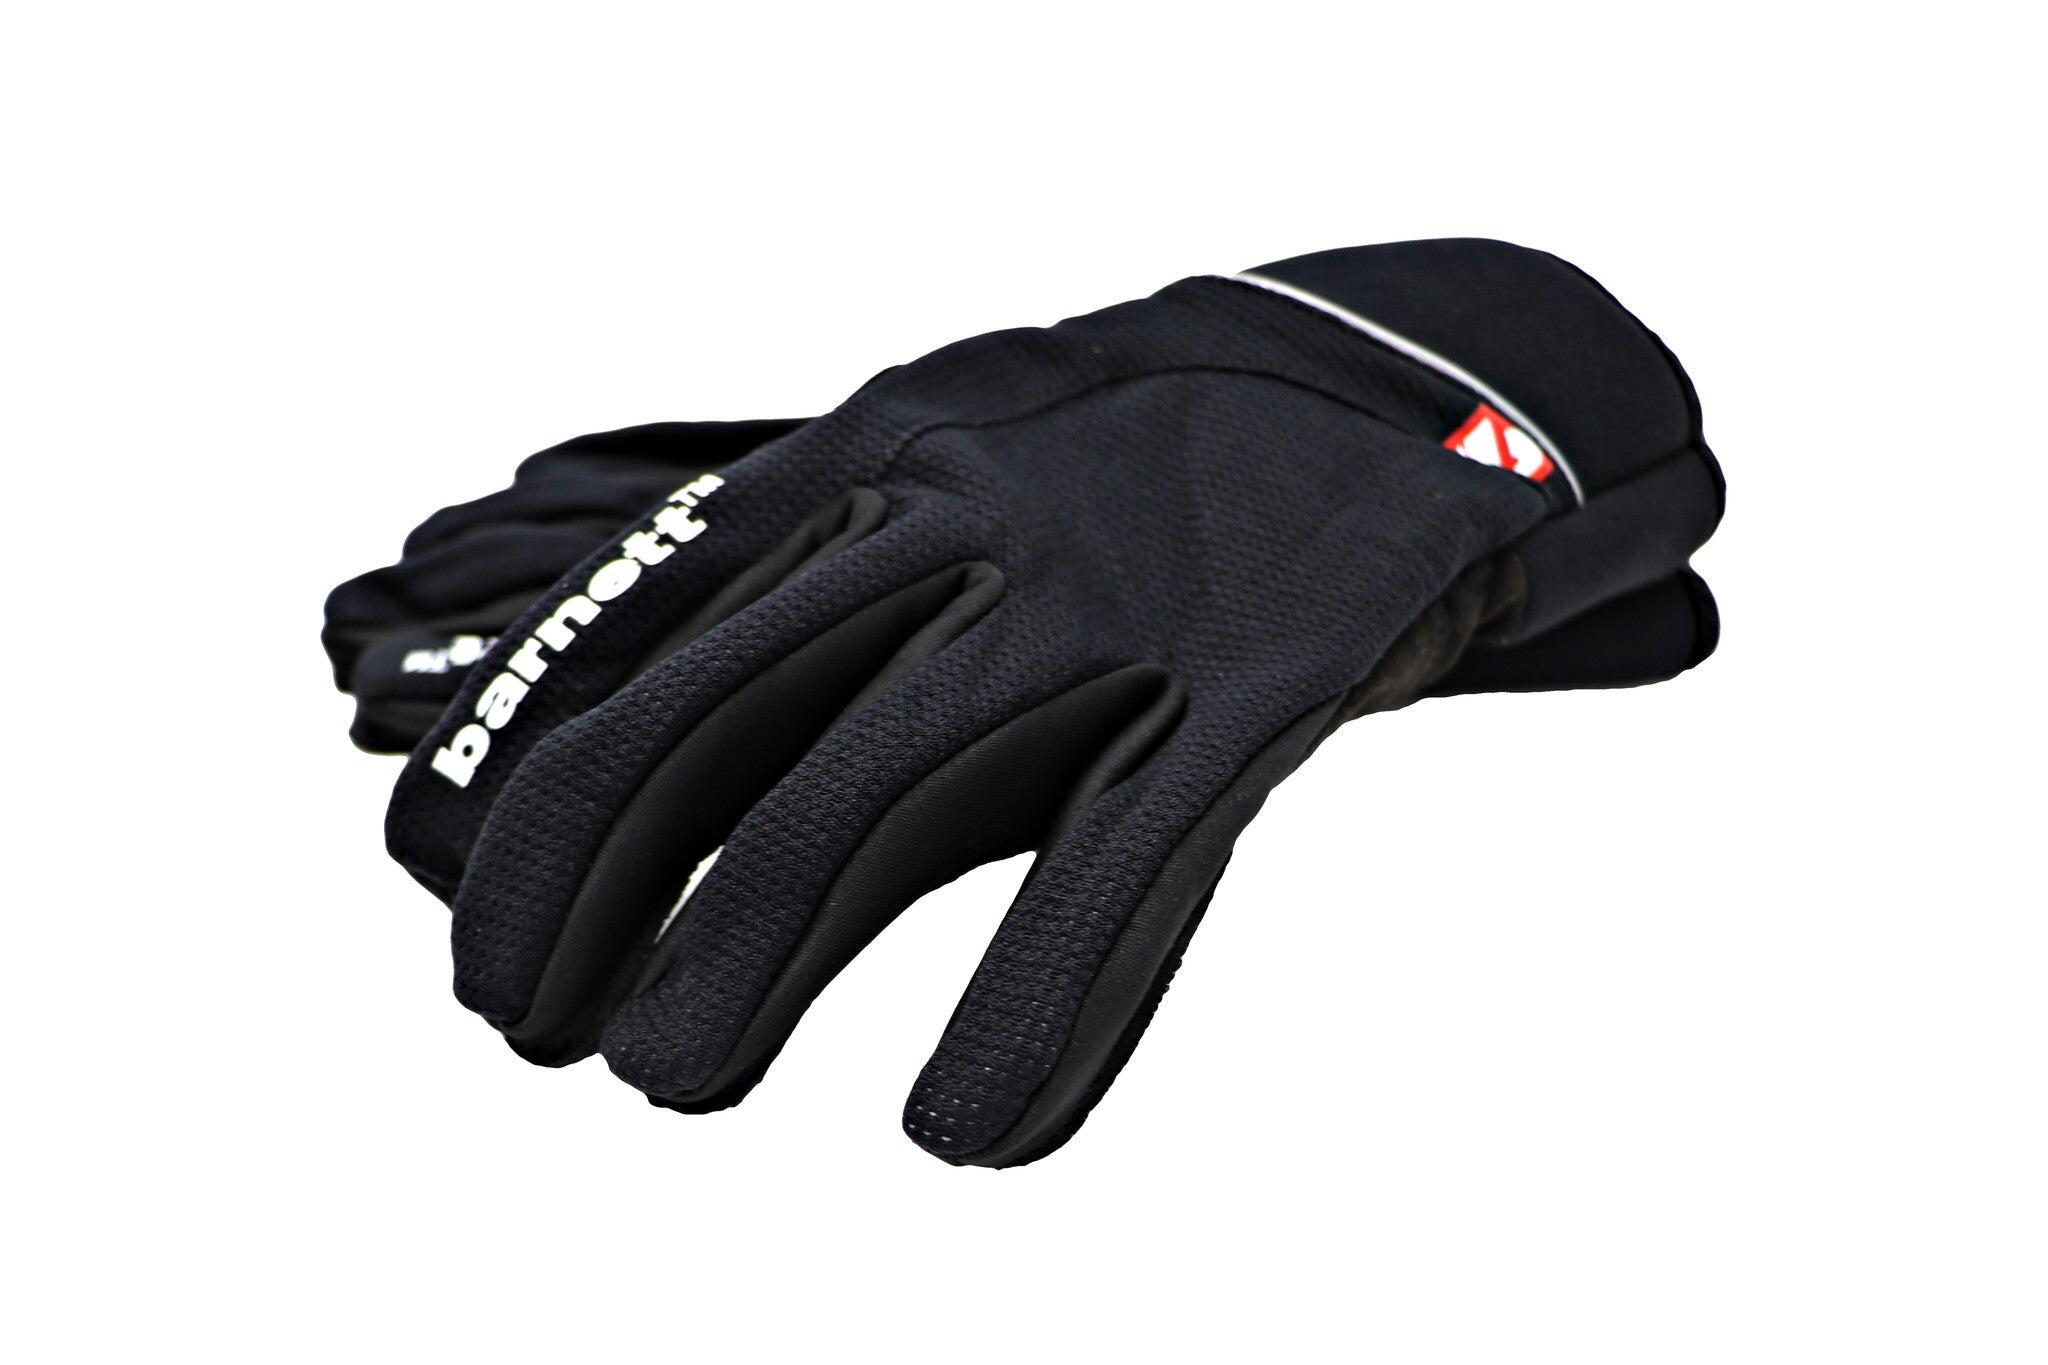  NBG-03 cross-country ski gloves 5/5